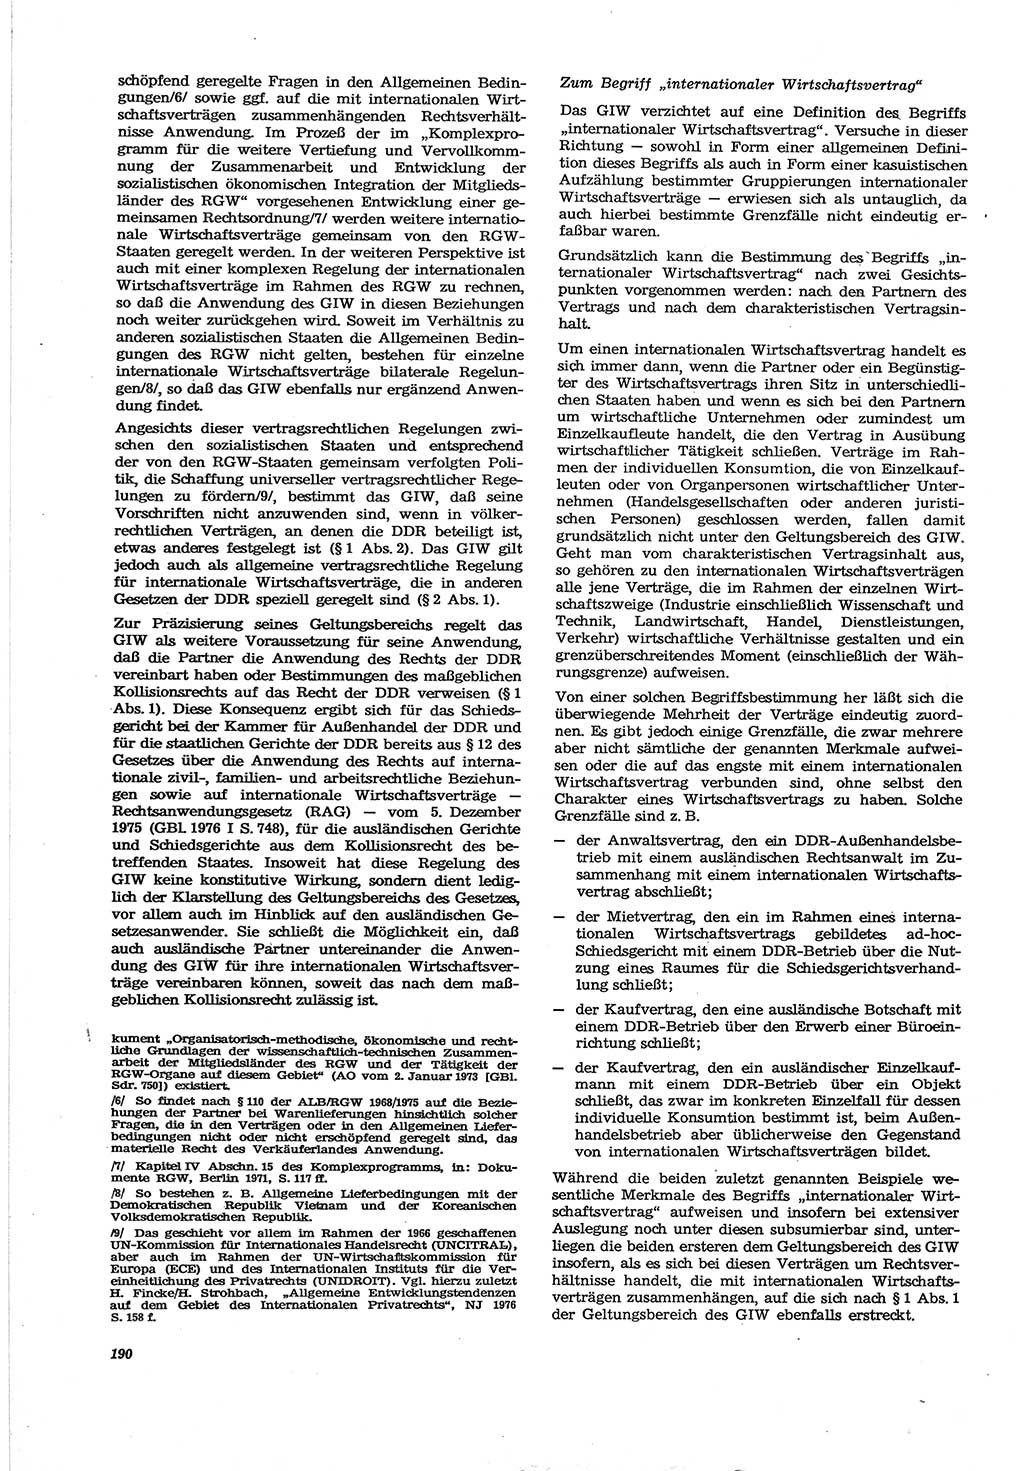 Neue Justiz (NJ), Zeitschrift für Recht und Rechtswissenschaft [Deutsche Demokratische Republik (DDR)], 30. Jahrgang 1976, Seite 190 (NJ DDR 1976, S. 190)